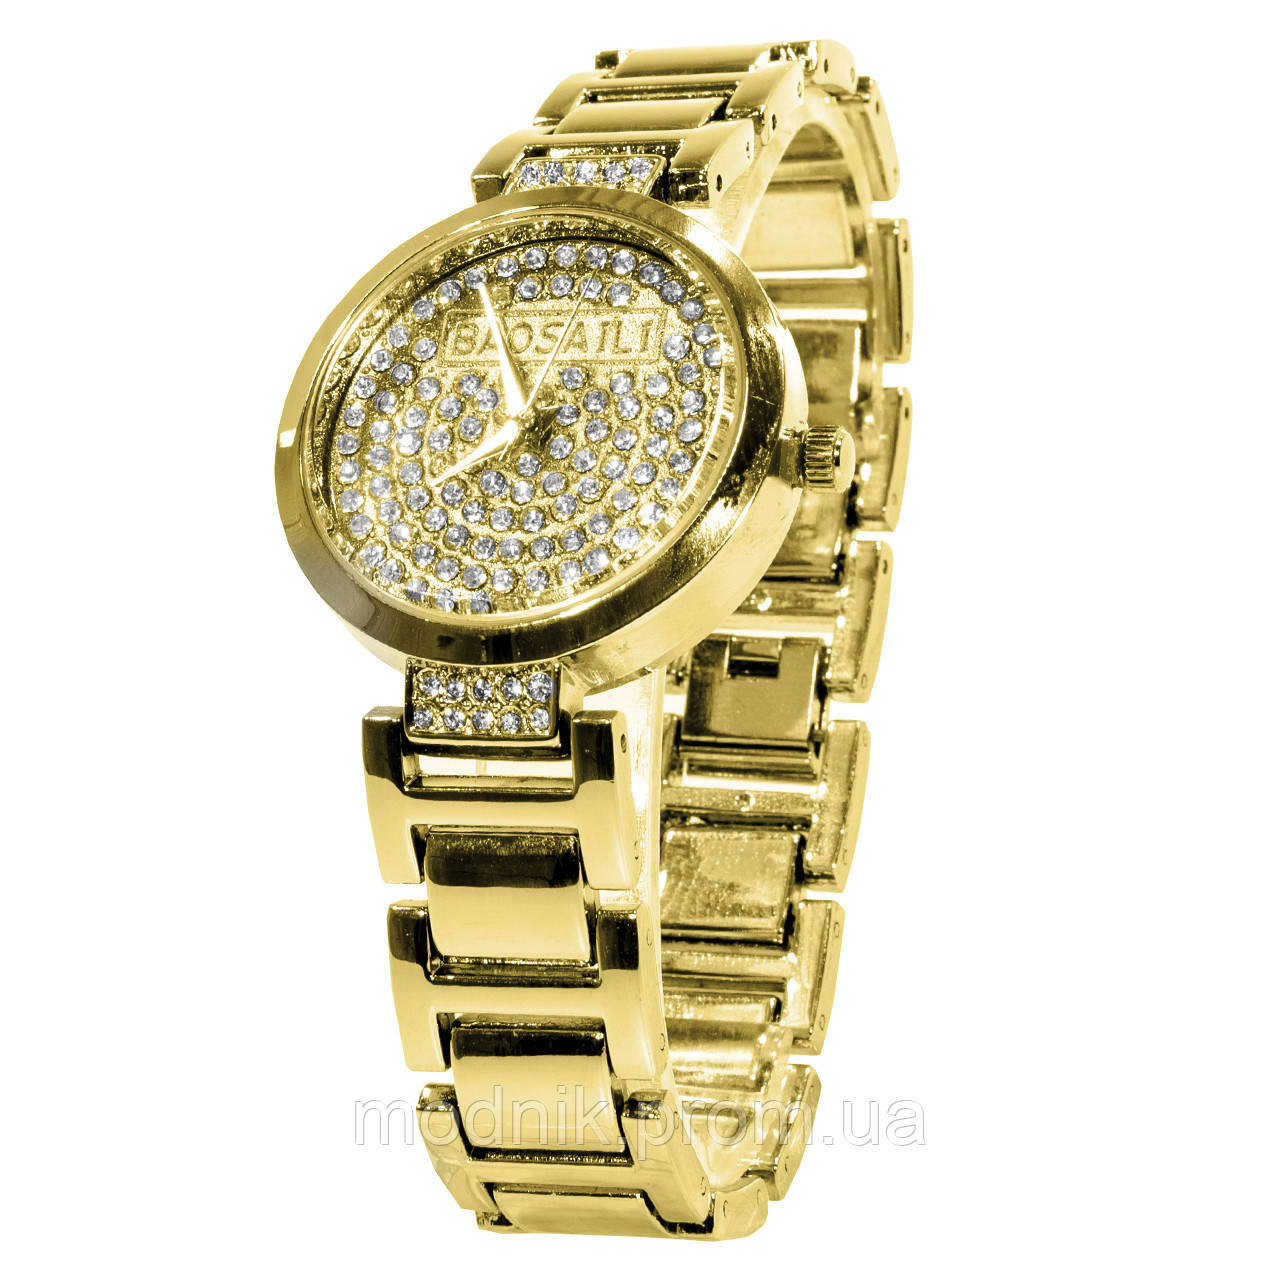 

Наручные часы Baosaili KJ805 Gold женские кварцевые с камнями 3081-8903, КОД: 1529705